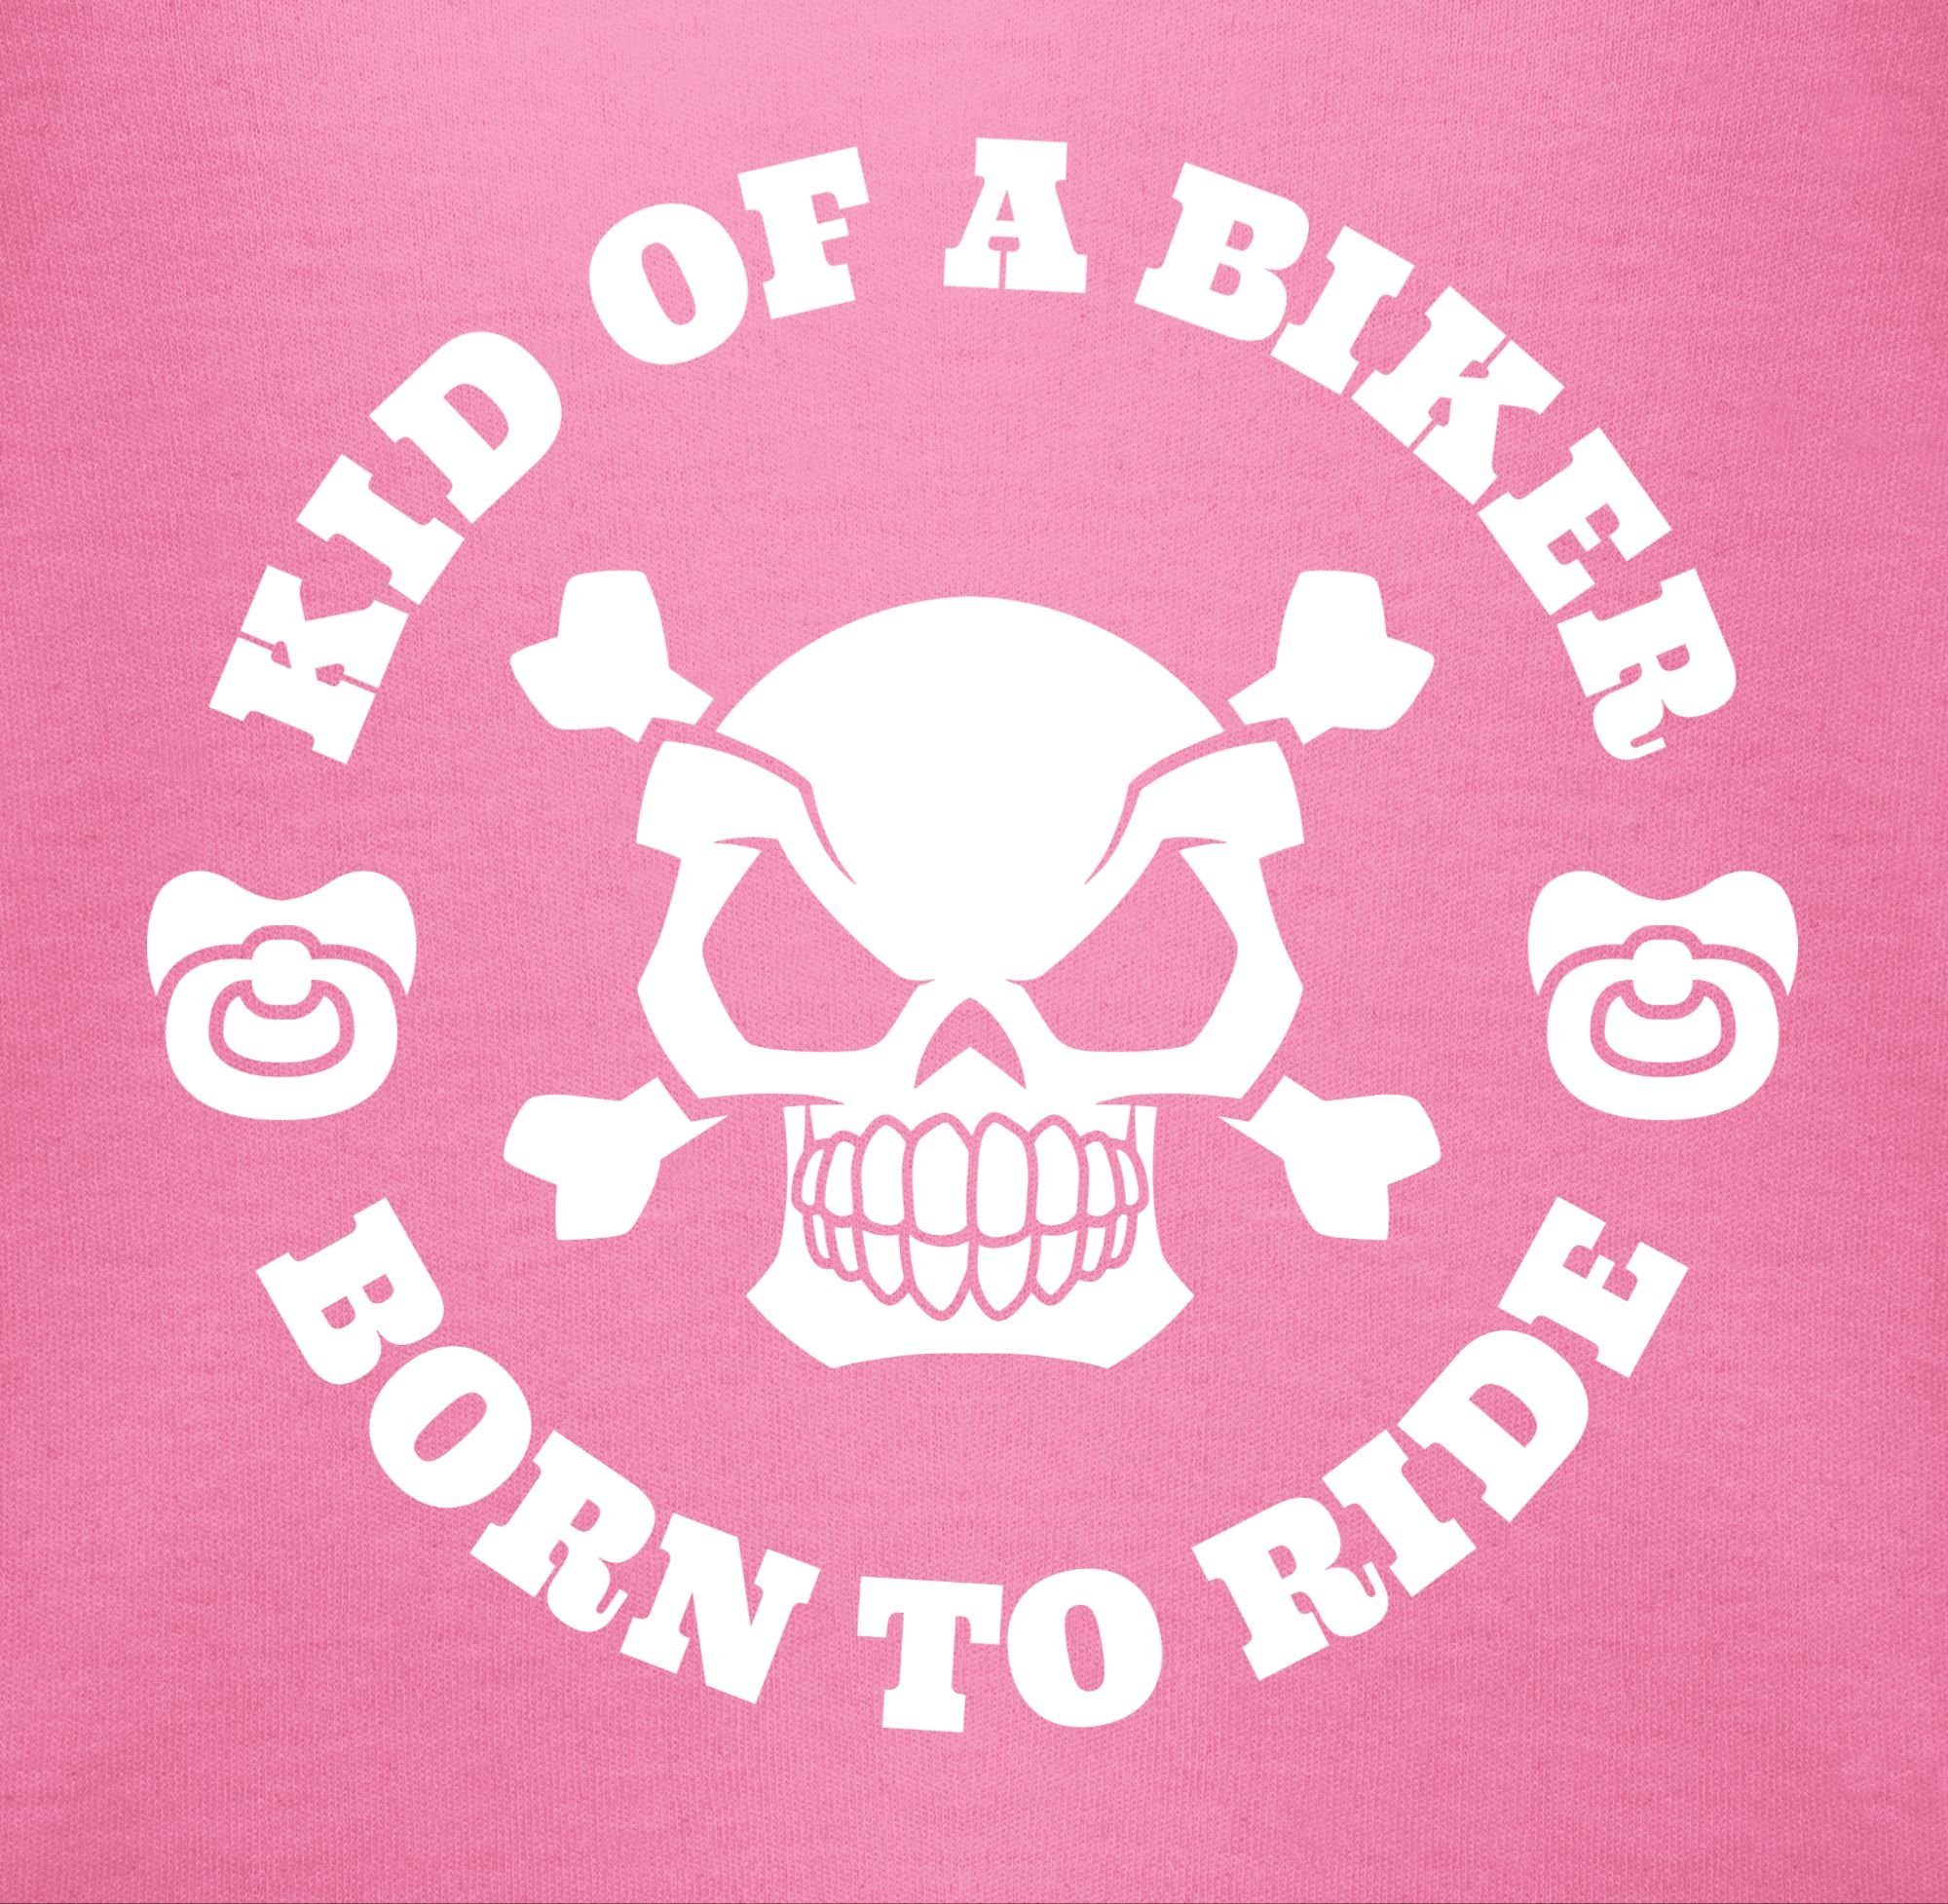 Shirtracer Shirtbody Baby biker Sprüche Pink born ride of to a 2 Kid